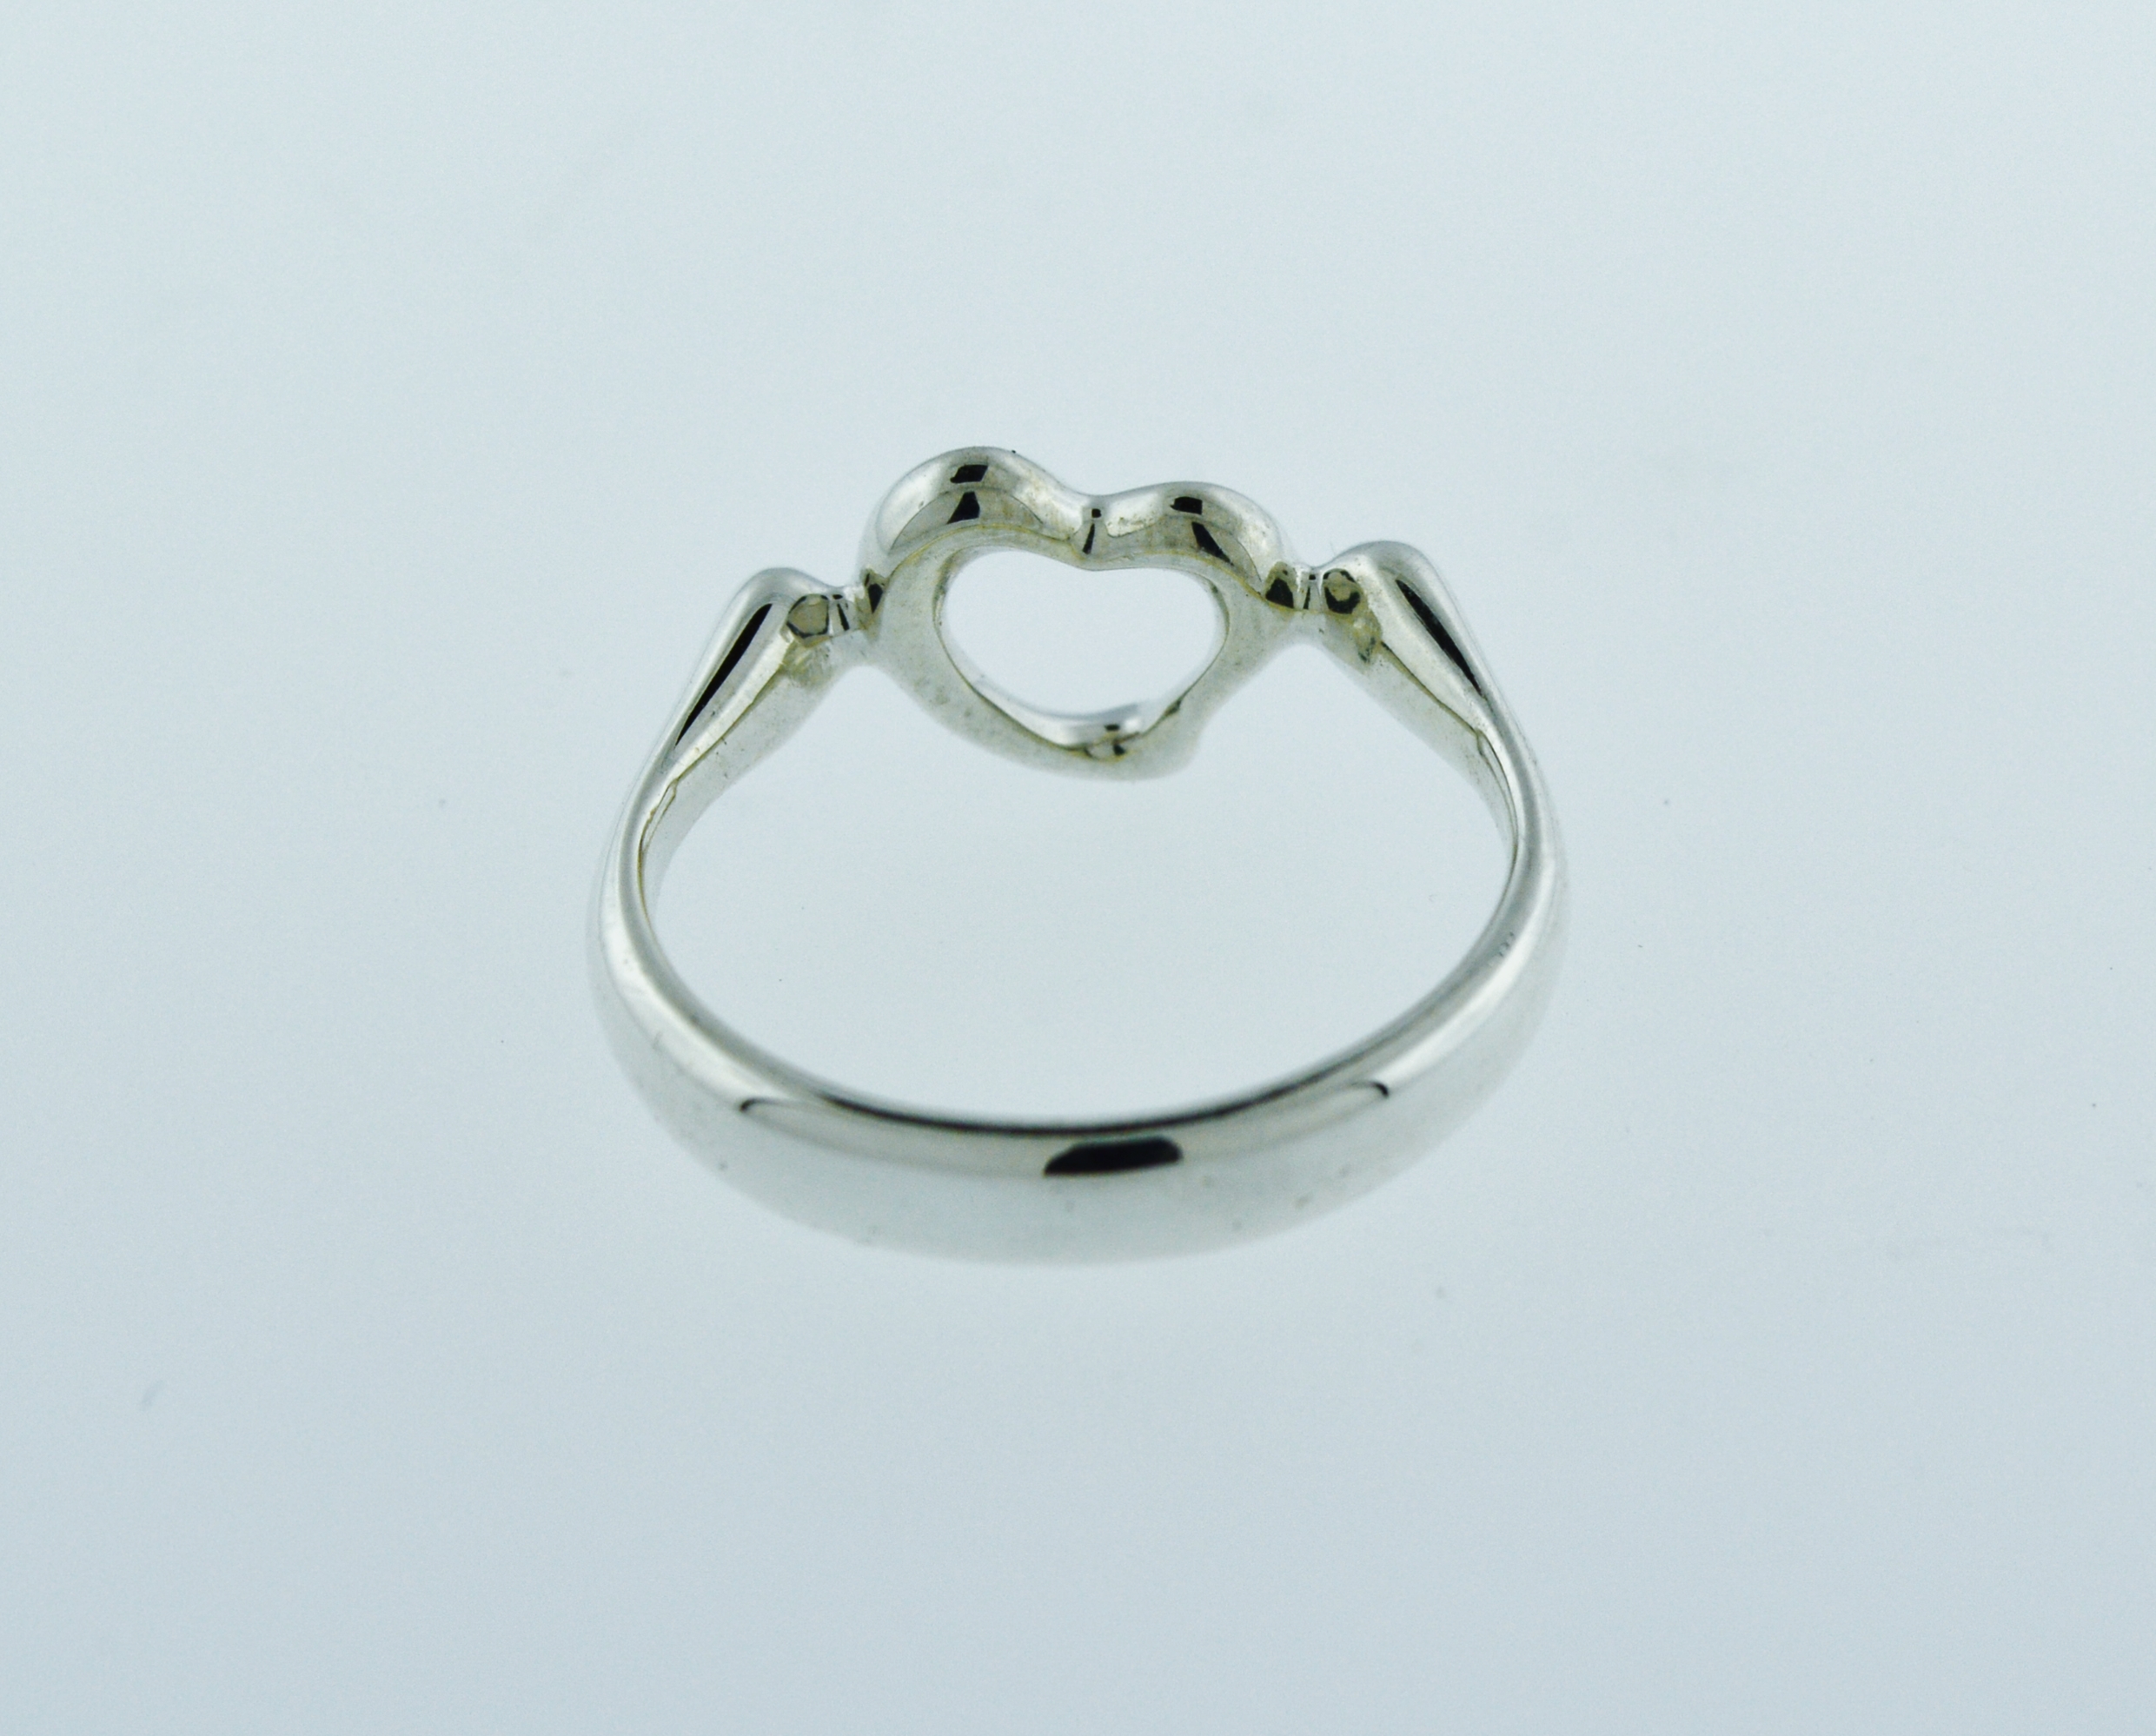 Tiffany & Co Elsa Peretti Open Heart Ring in Sterling Silver | eBay